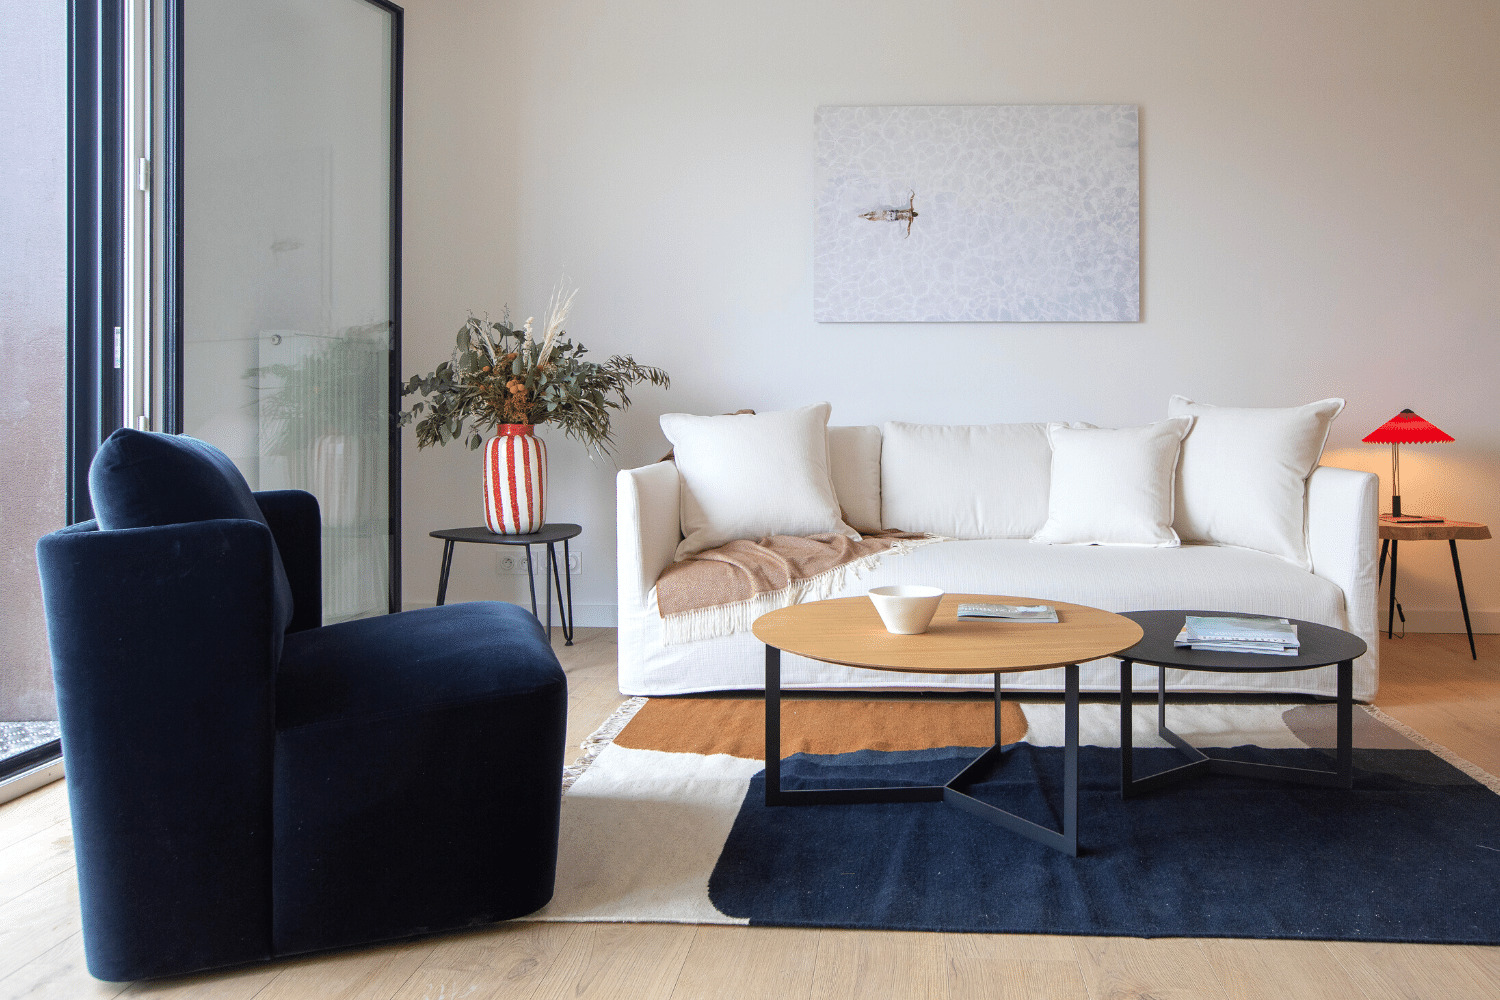 Actualité BATI-ARMOR offre un service clé en main pour meubler vos intérieurs